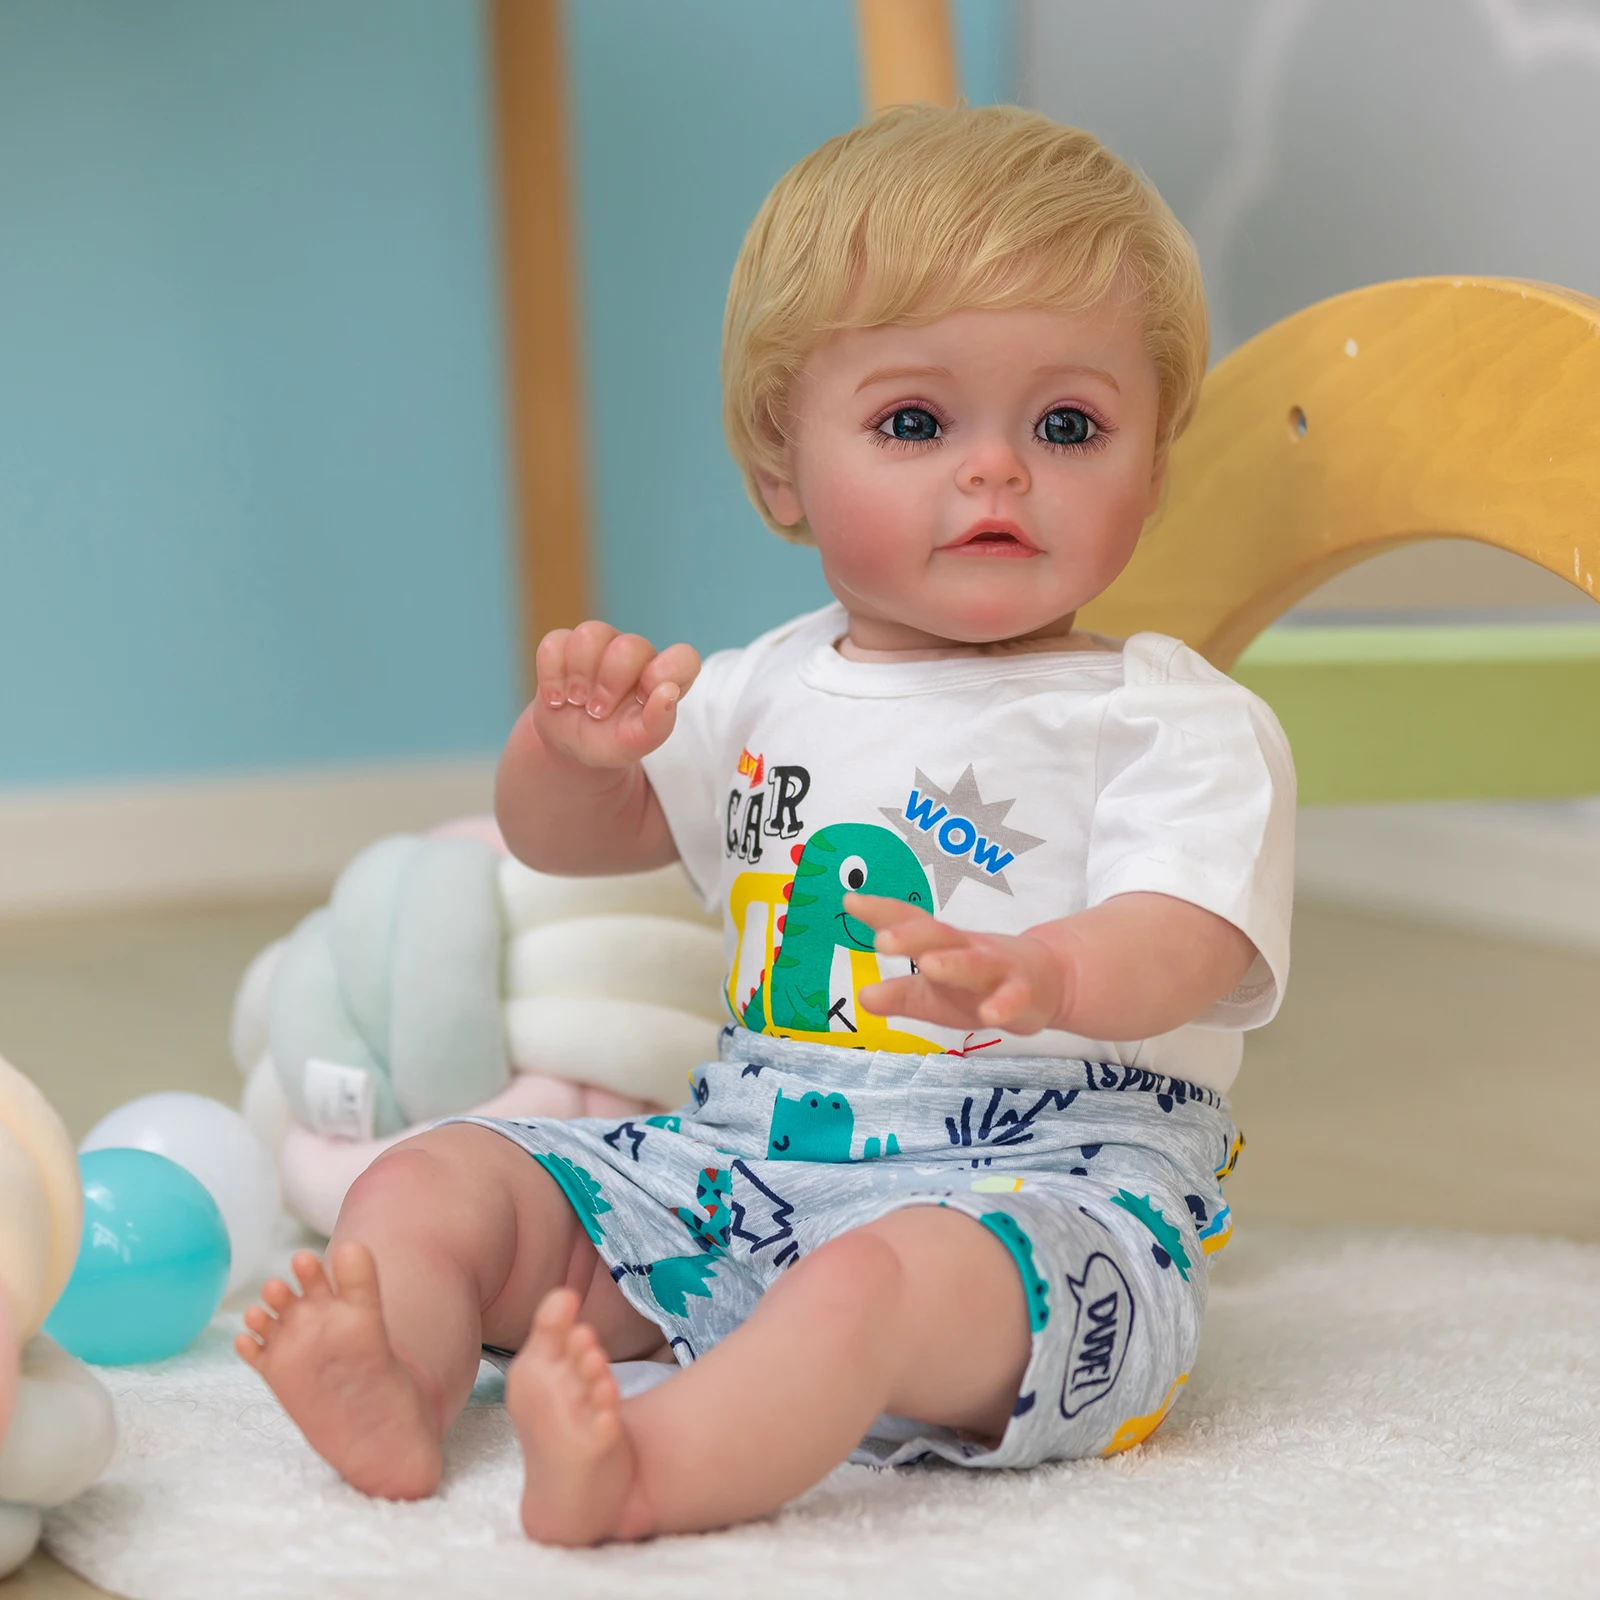 Възраждане кукла моделиране момче 3 месеца ръчно изработени 3D видими вени на кожата Изображение 1 